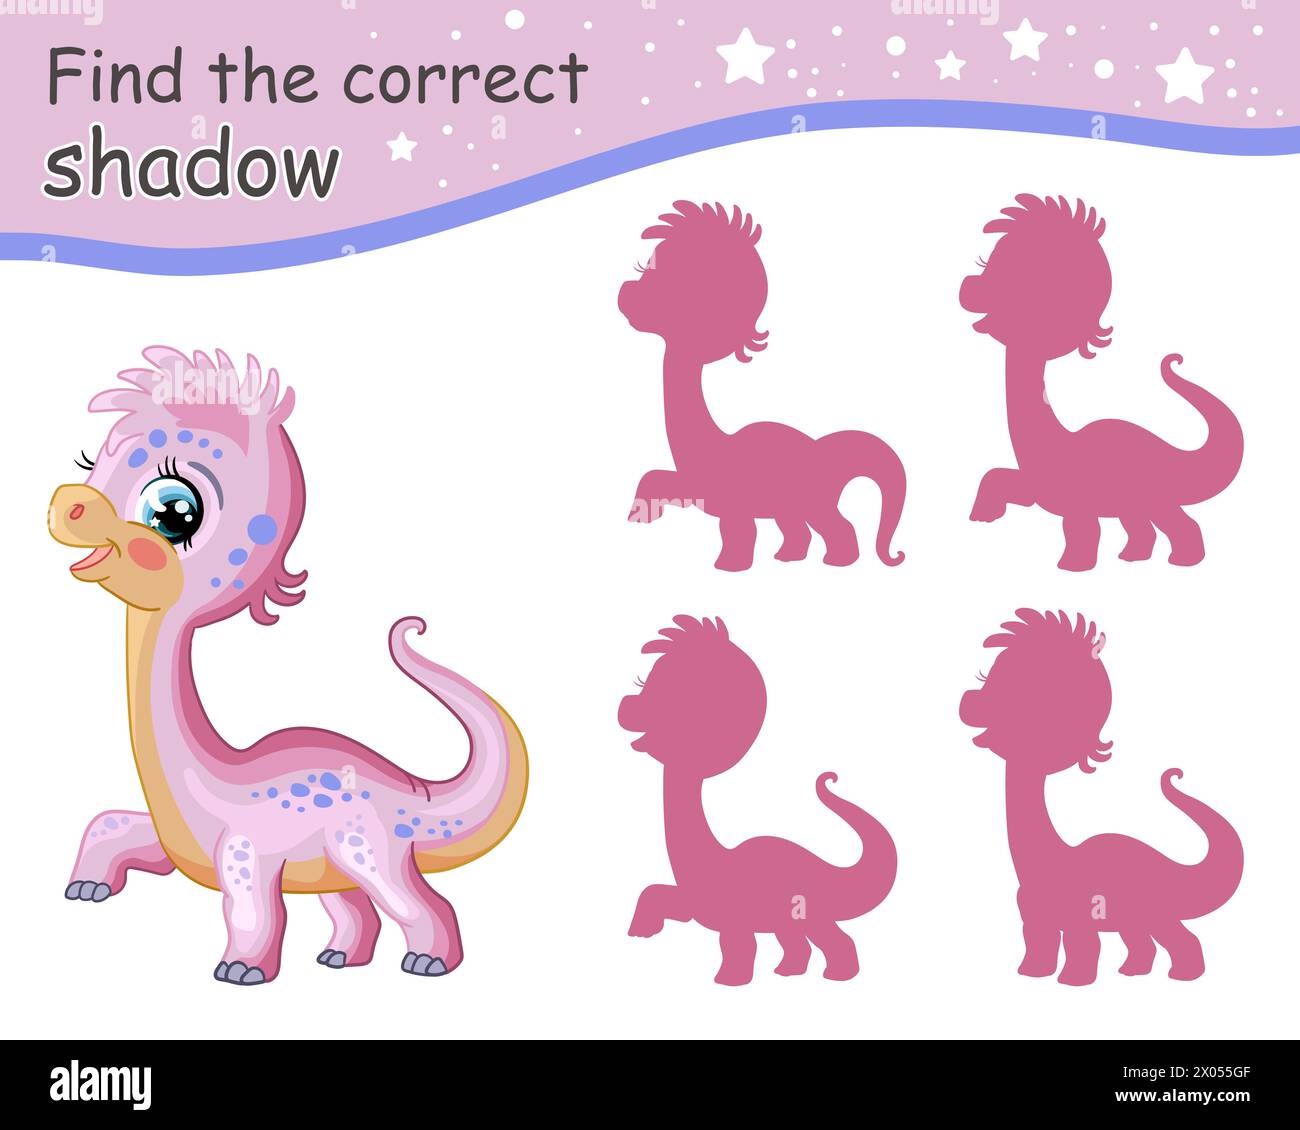 Suchen Sie den richtigen Schatten. Niedlicher, pinkfarbener Diplodocus-Dinosaurier. Pädagogisches Matching-Spiel für Kinder mit Zeichentrickfigur. Aktivität, Logikspiel, Lernen Stock Vektor